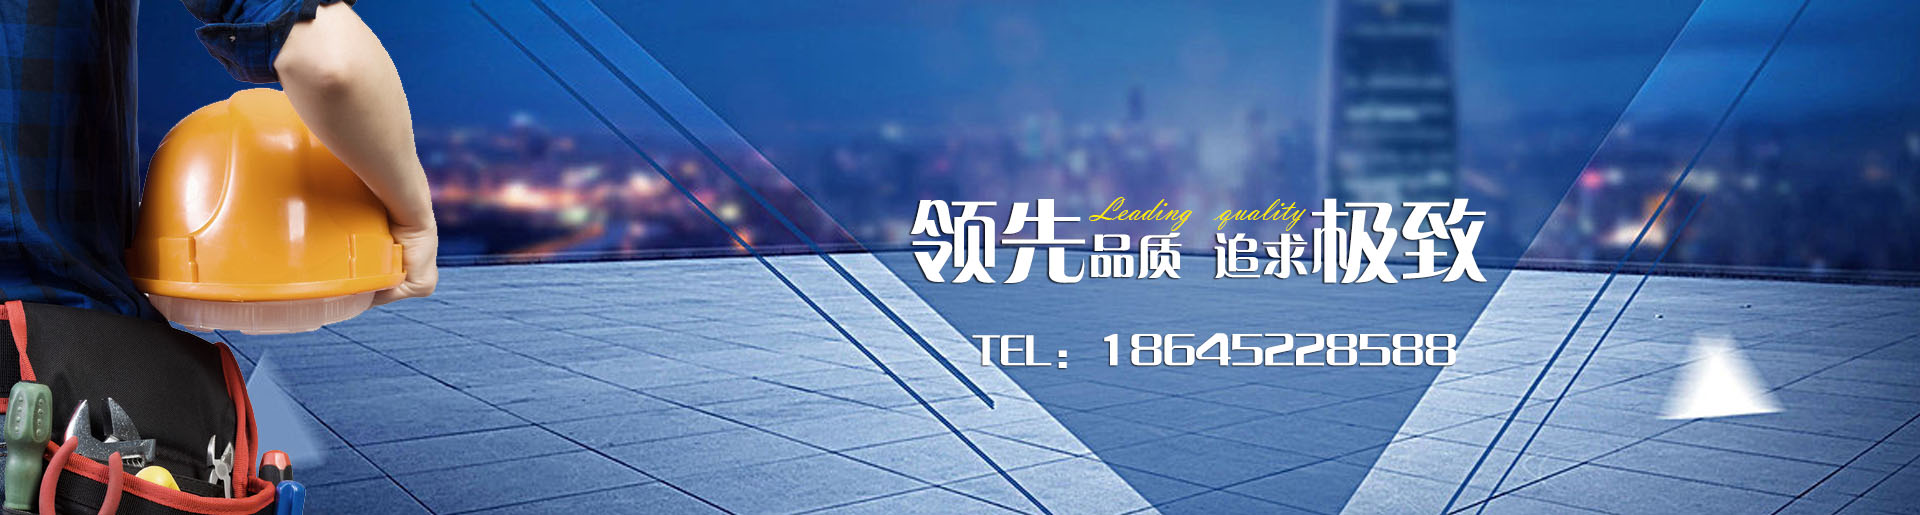 網(wǎng)站banner圖片